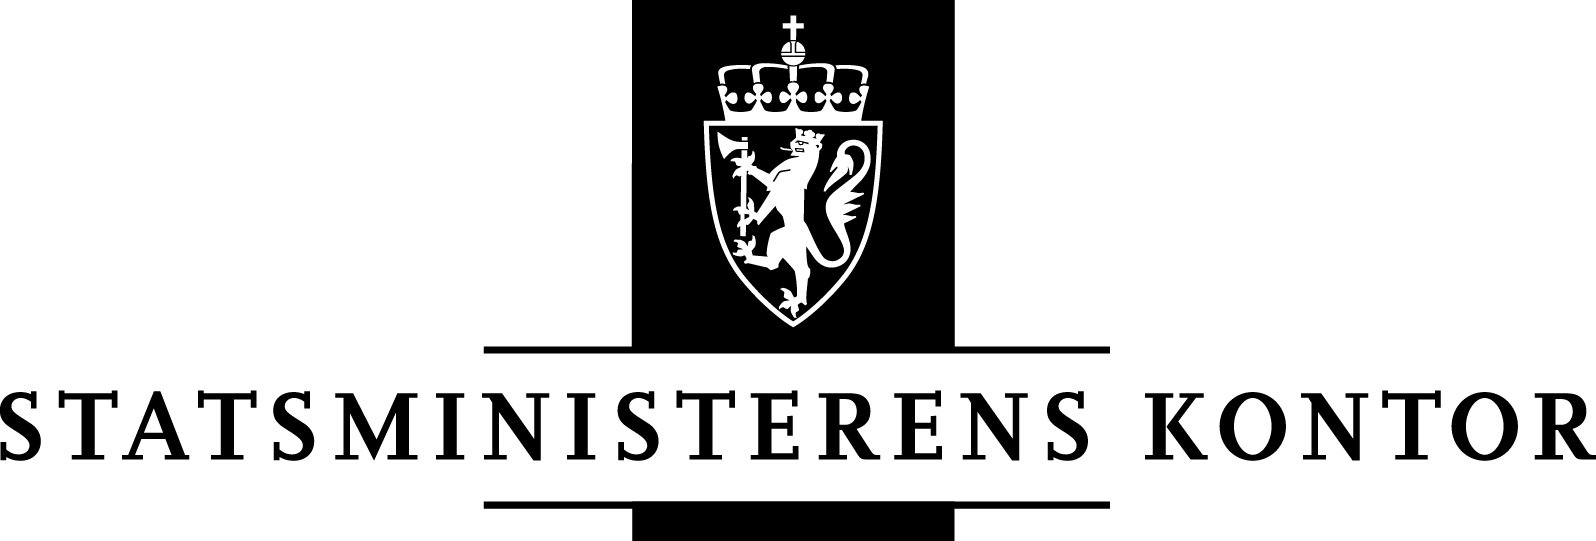 Logo Statsministerens kontor i sort/hvit